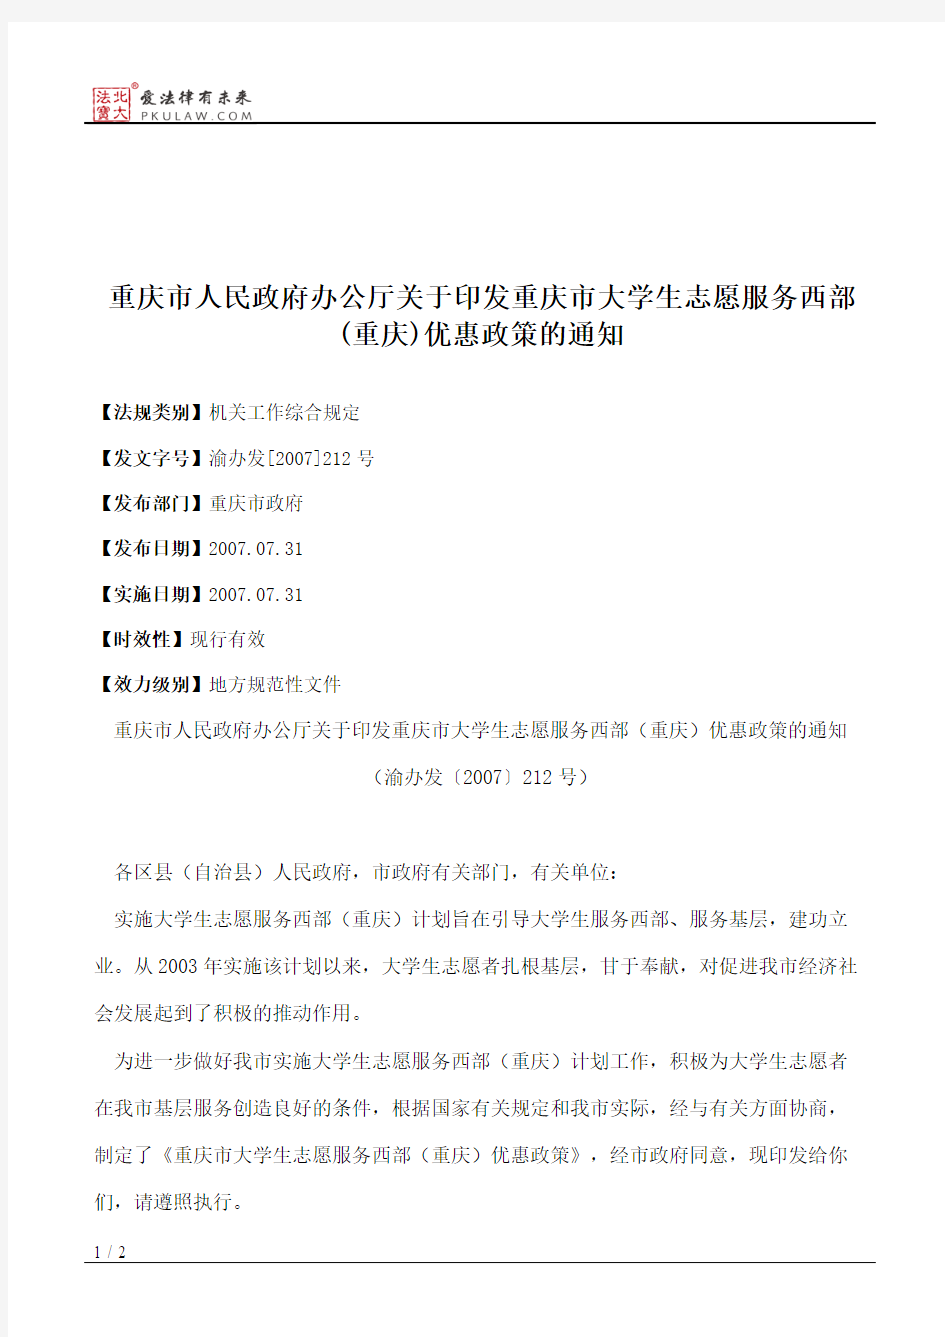 重庆市人民政府办公厅关于印发重庆市大学生志愿服务西部(重庆)优